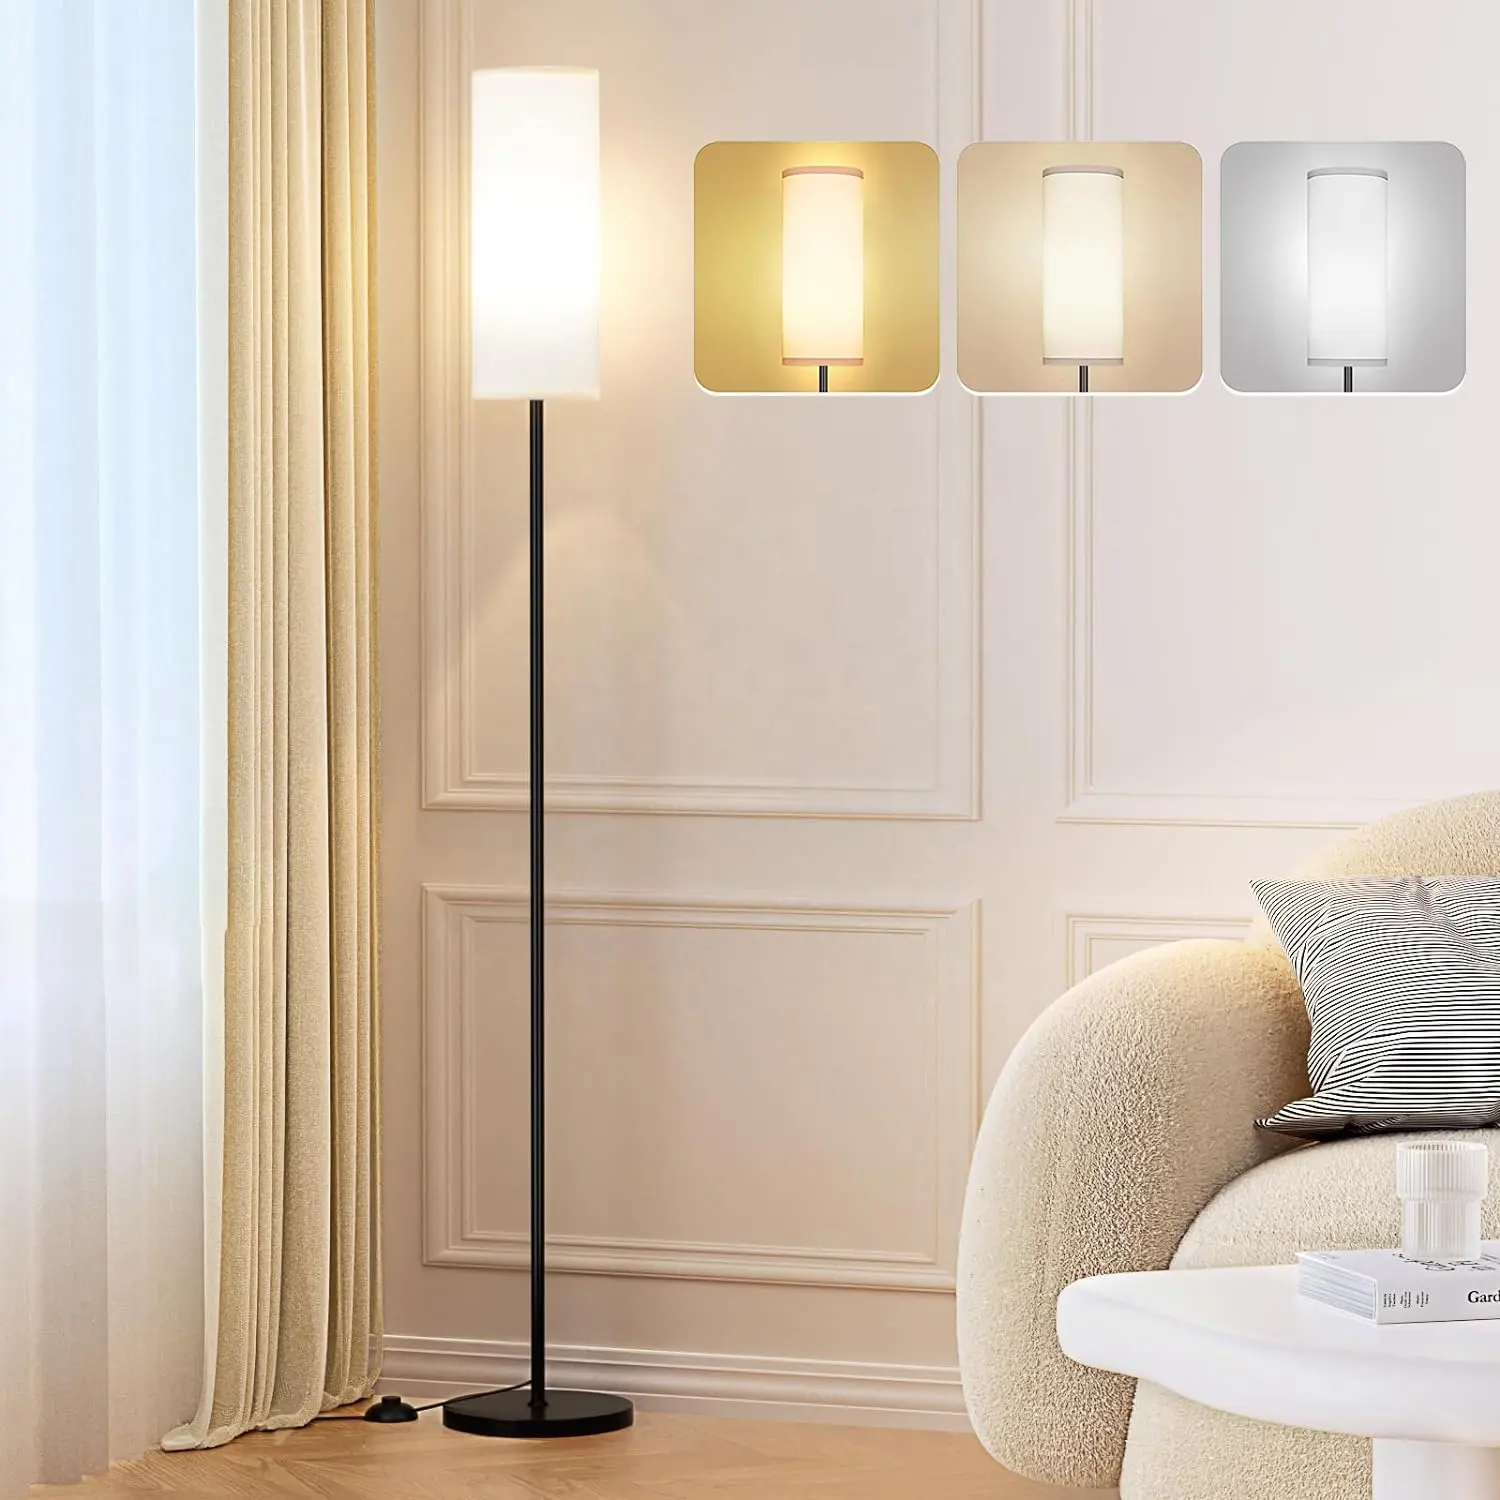 مصباح أرضي JESLED لغرفة المعيشة مزود بـ 3 ألوان لمبة درجة الحرارة مصابيح أرضية بسيطة لمختلف أنماط المنازل سهلة التركيب